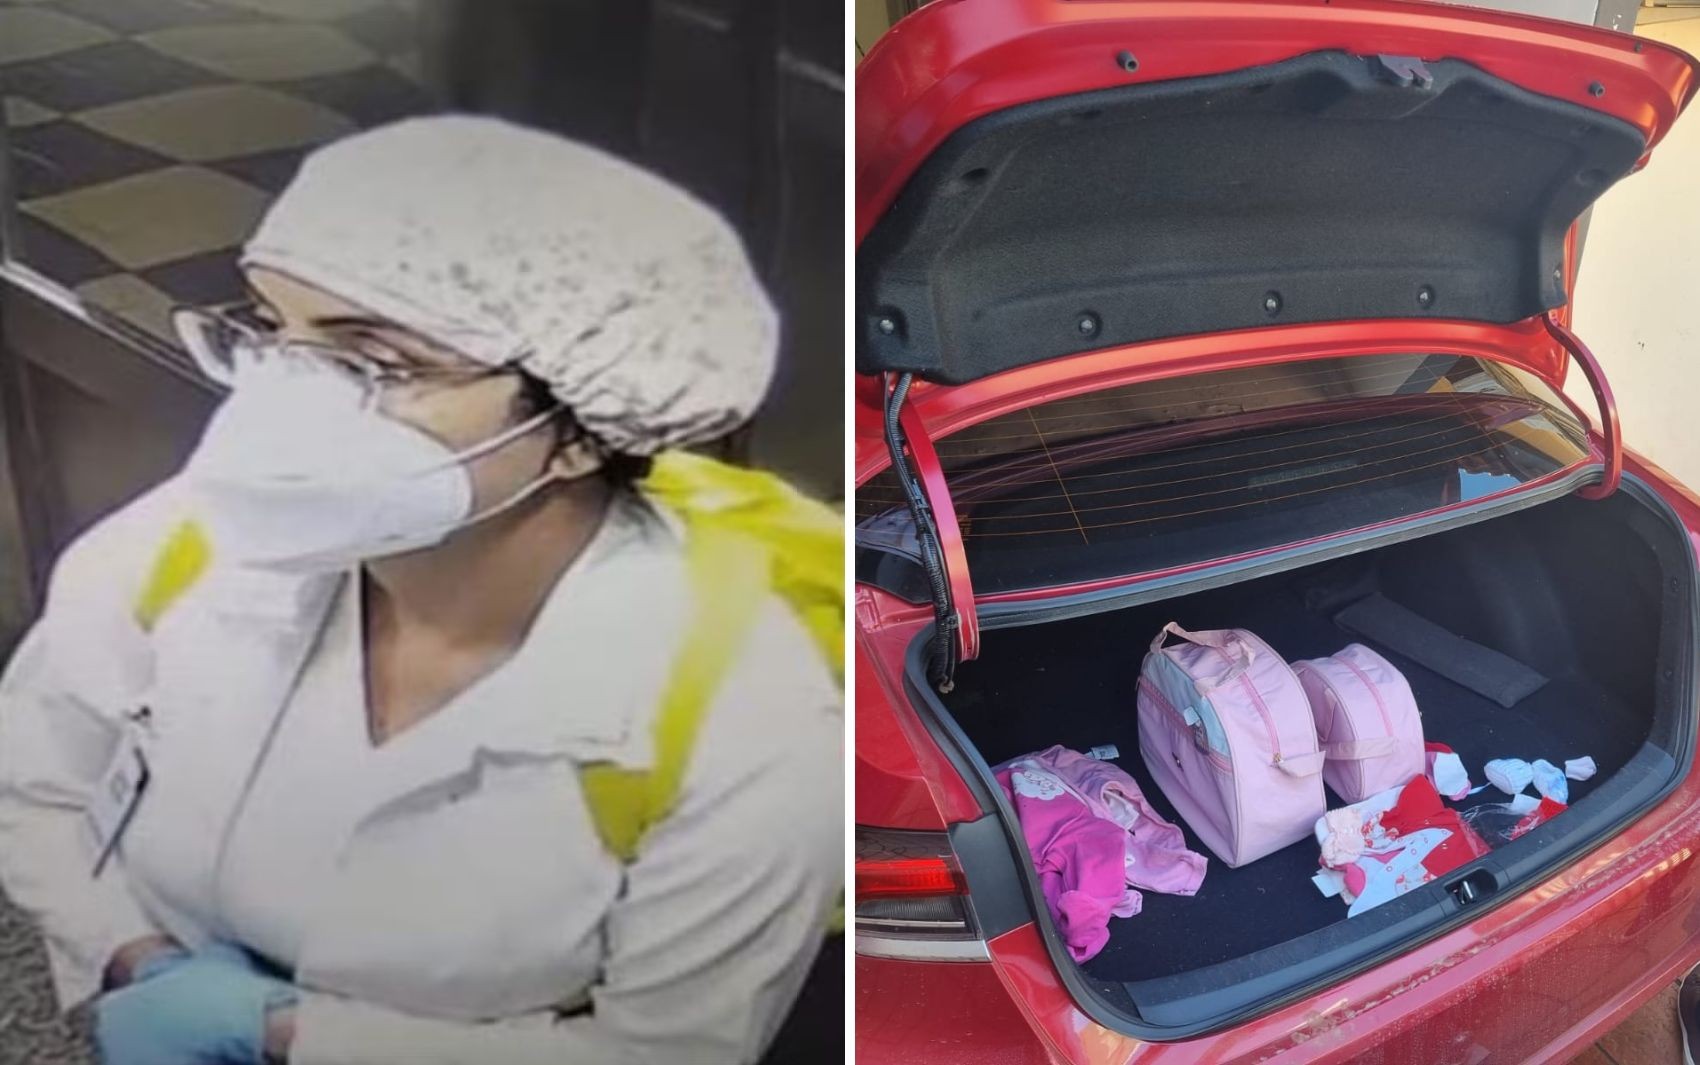 Médica presa por sequestrar bebê disse que enxoval achado no carro dela era presente para empregada doméstica, diz polícia